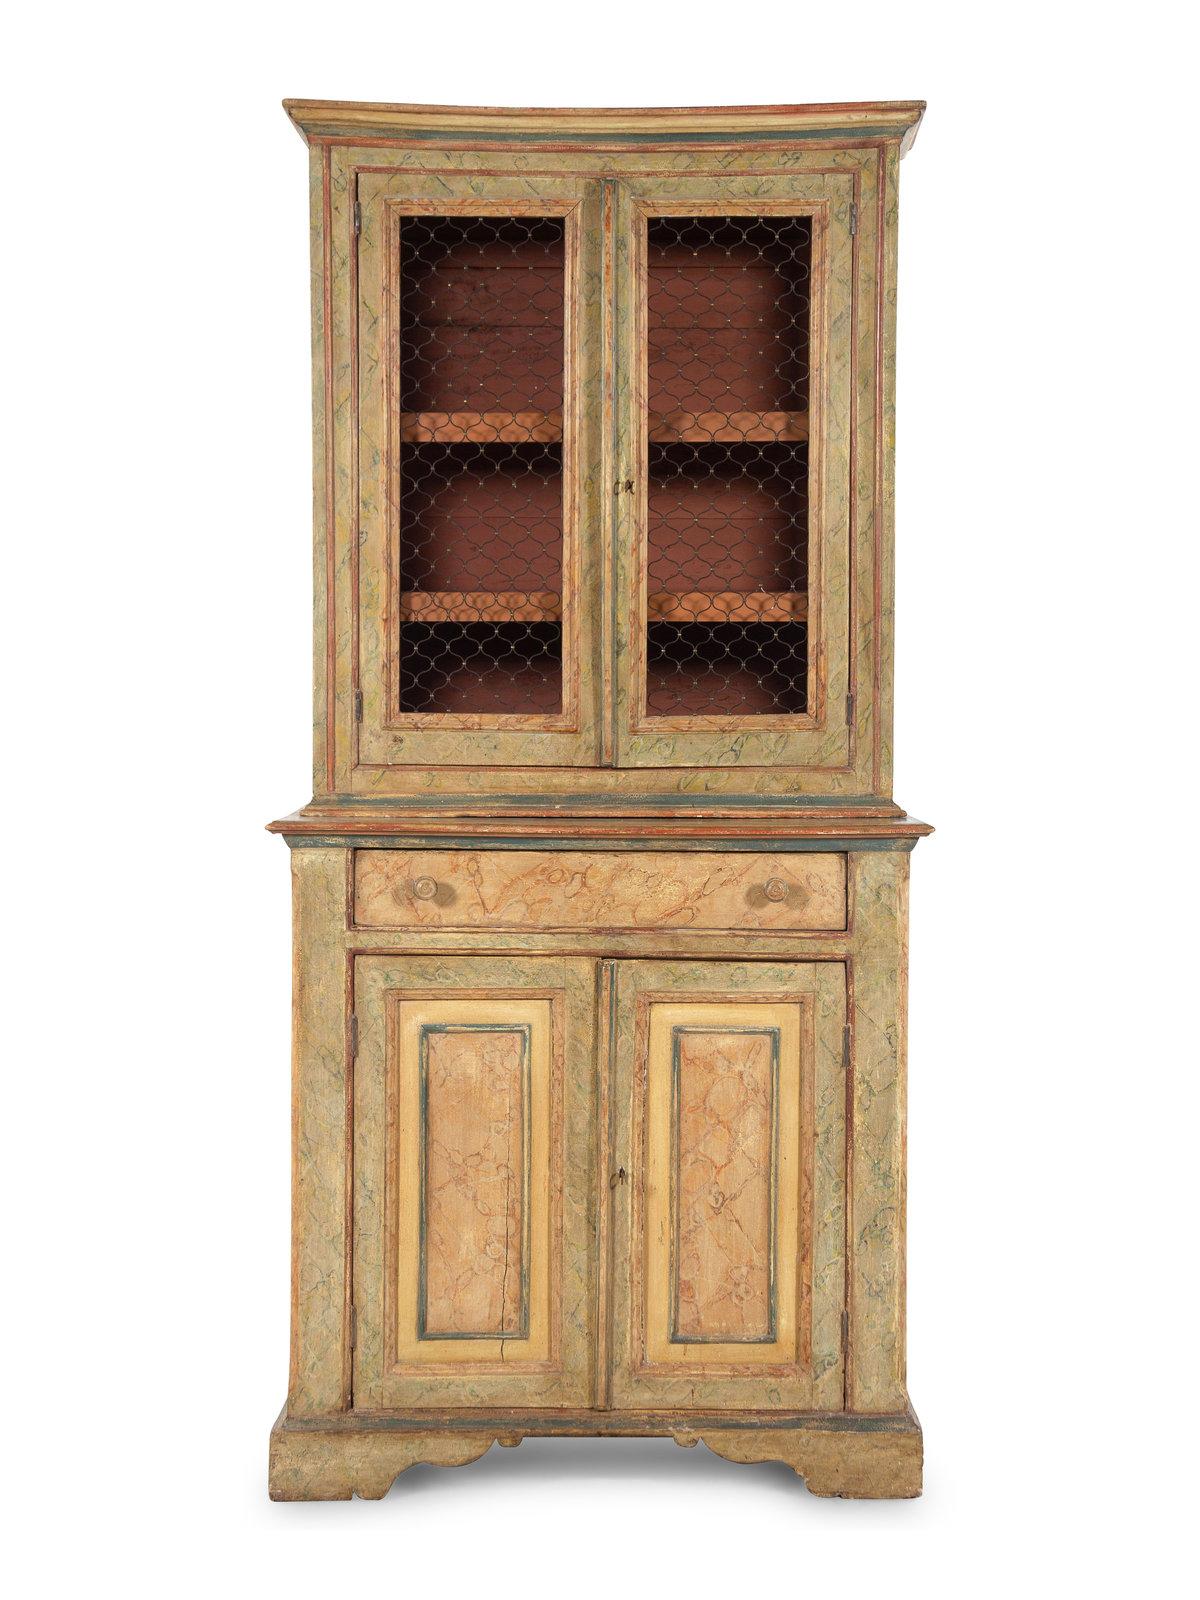 Italienischer bemalter Schrank oder Bücherregal, spätes 18. Jahrhundert, ausgestattet mit einer mittleren Schublade, einem oberen Teil für die Auslage mit Hühnerdraht und einem unteren Teil für die Lagerung